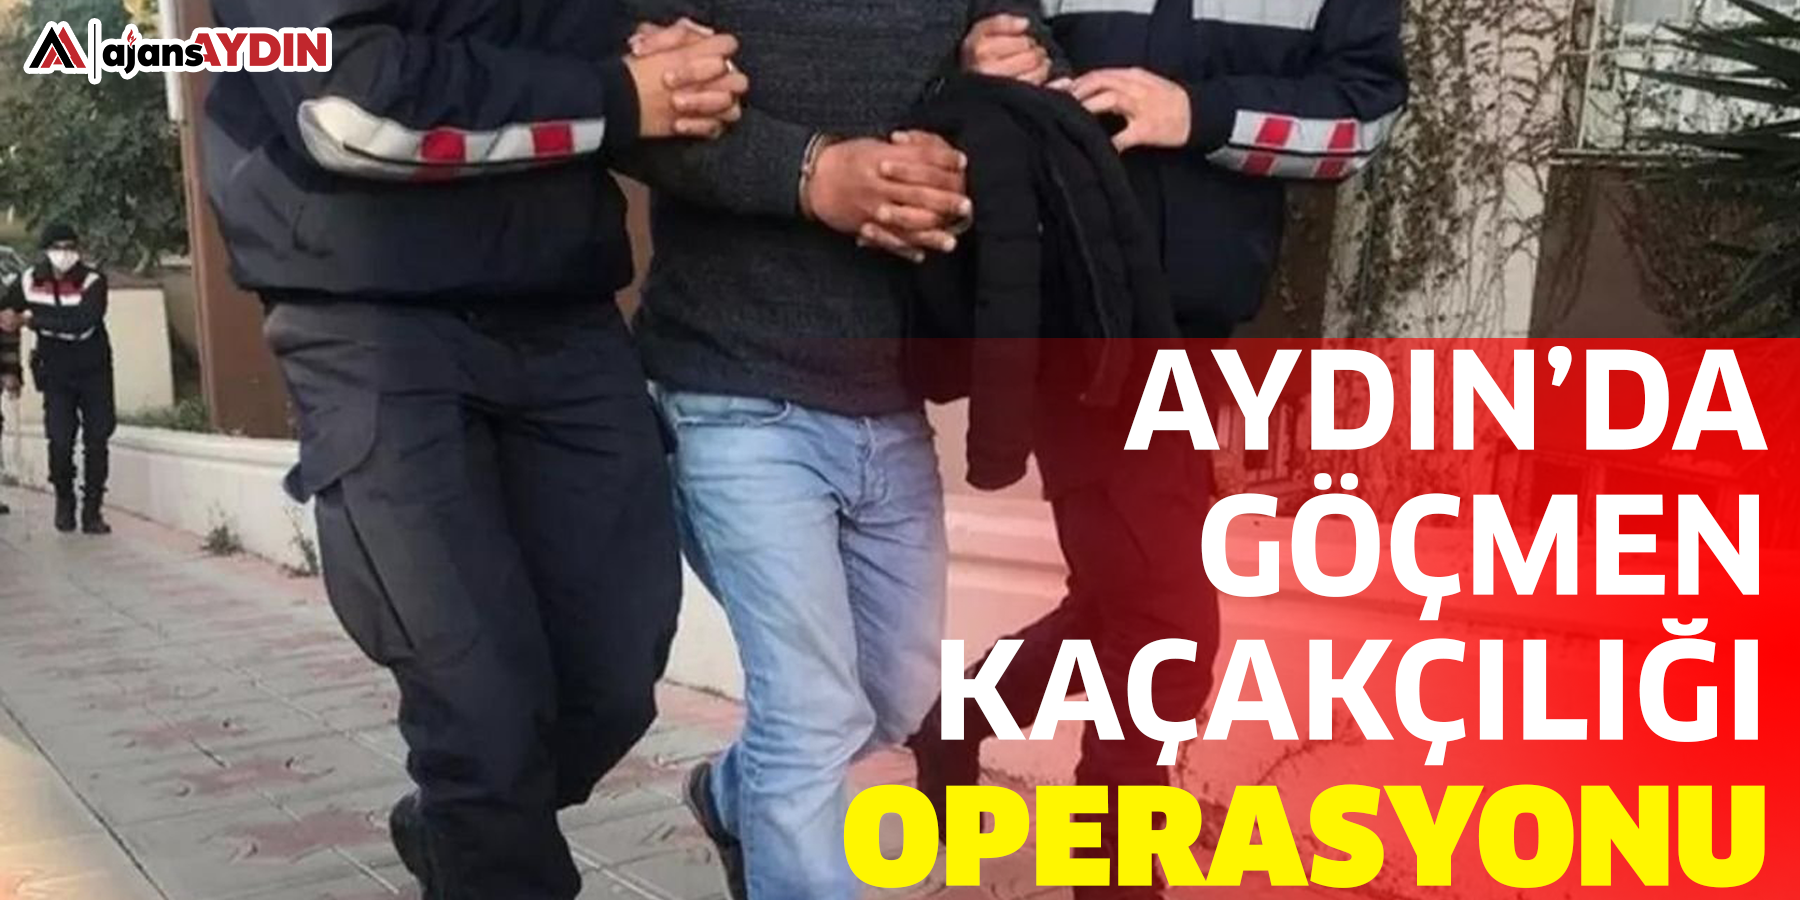 Aydın’da göçmen kaçakçılığı operasyonu